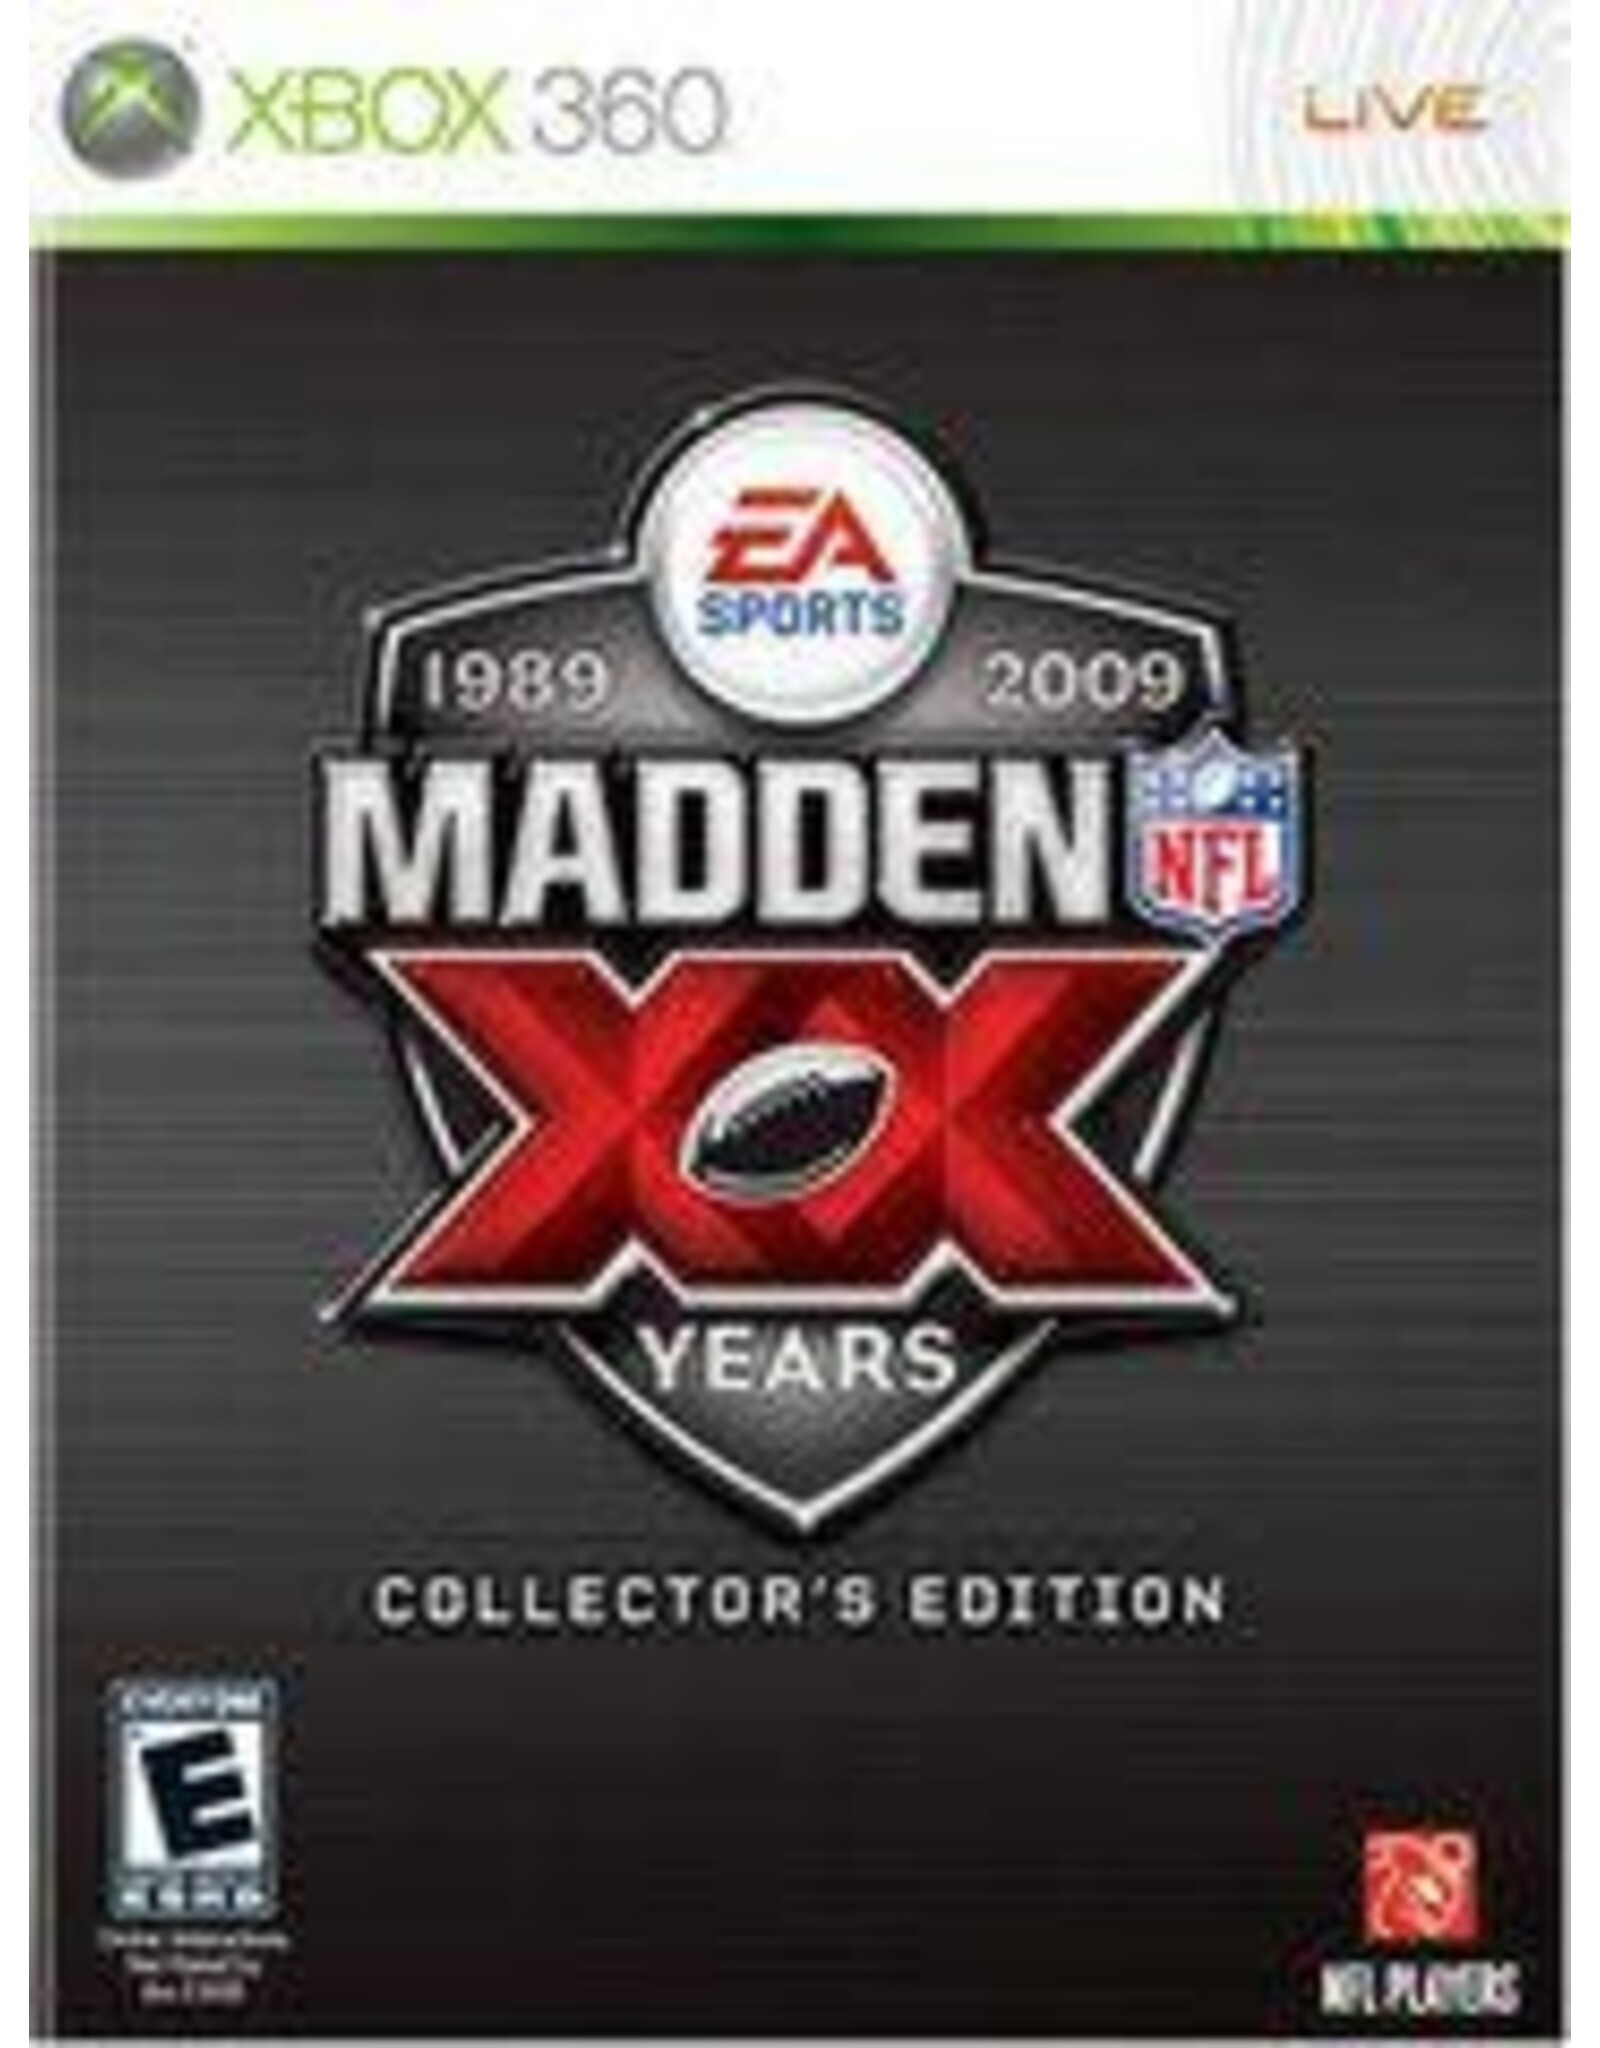 Xbox 360 Madden 2009 20th Anniversary Edition (CiB, No Slipcover)